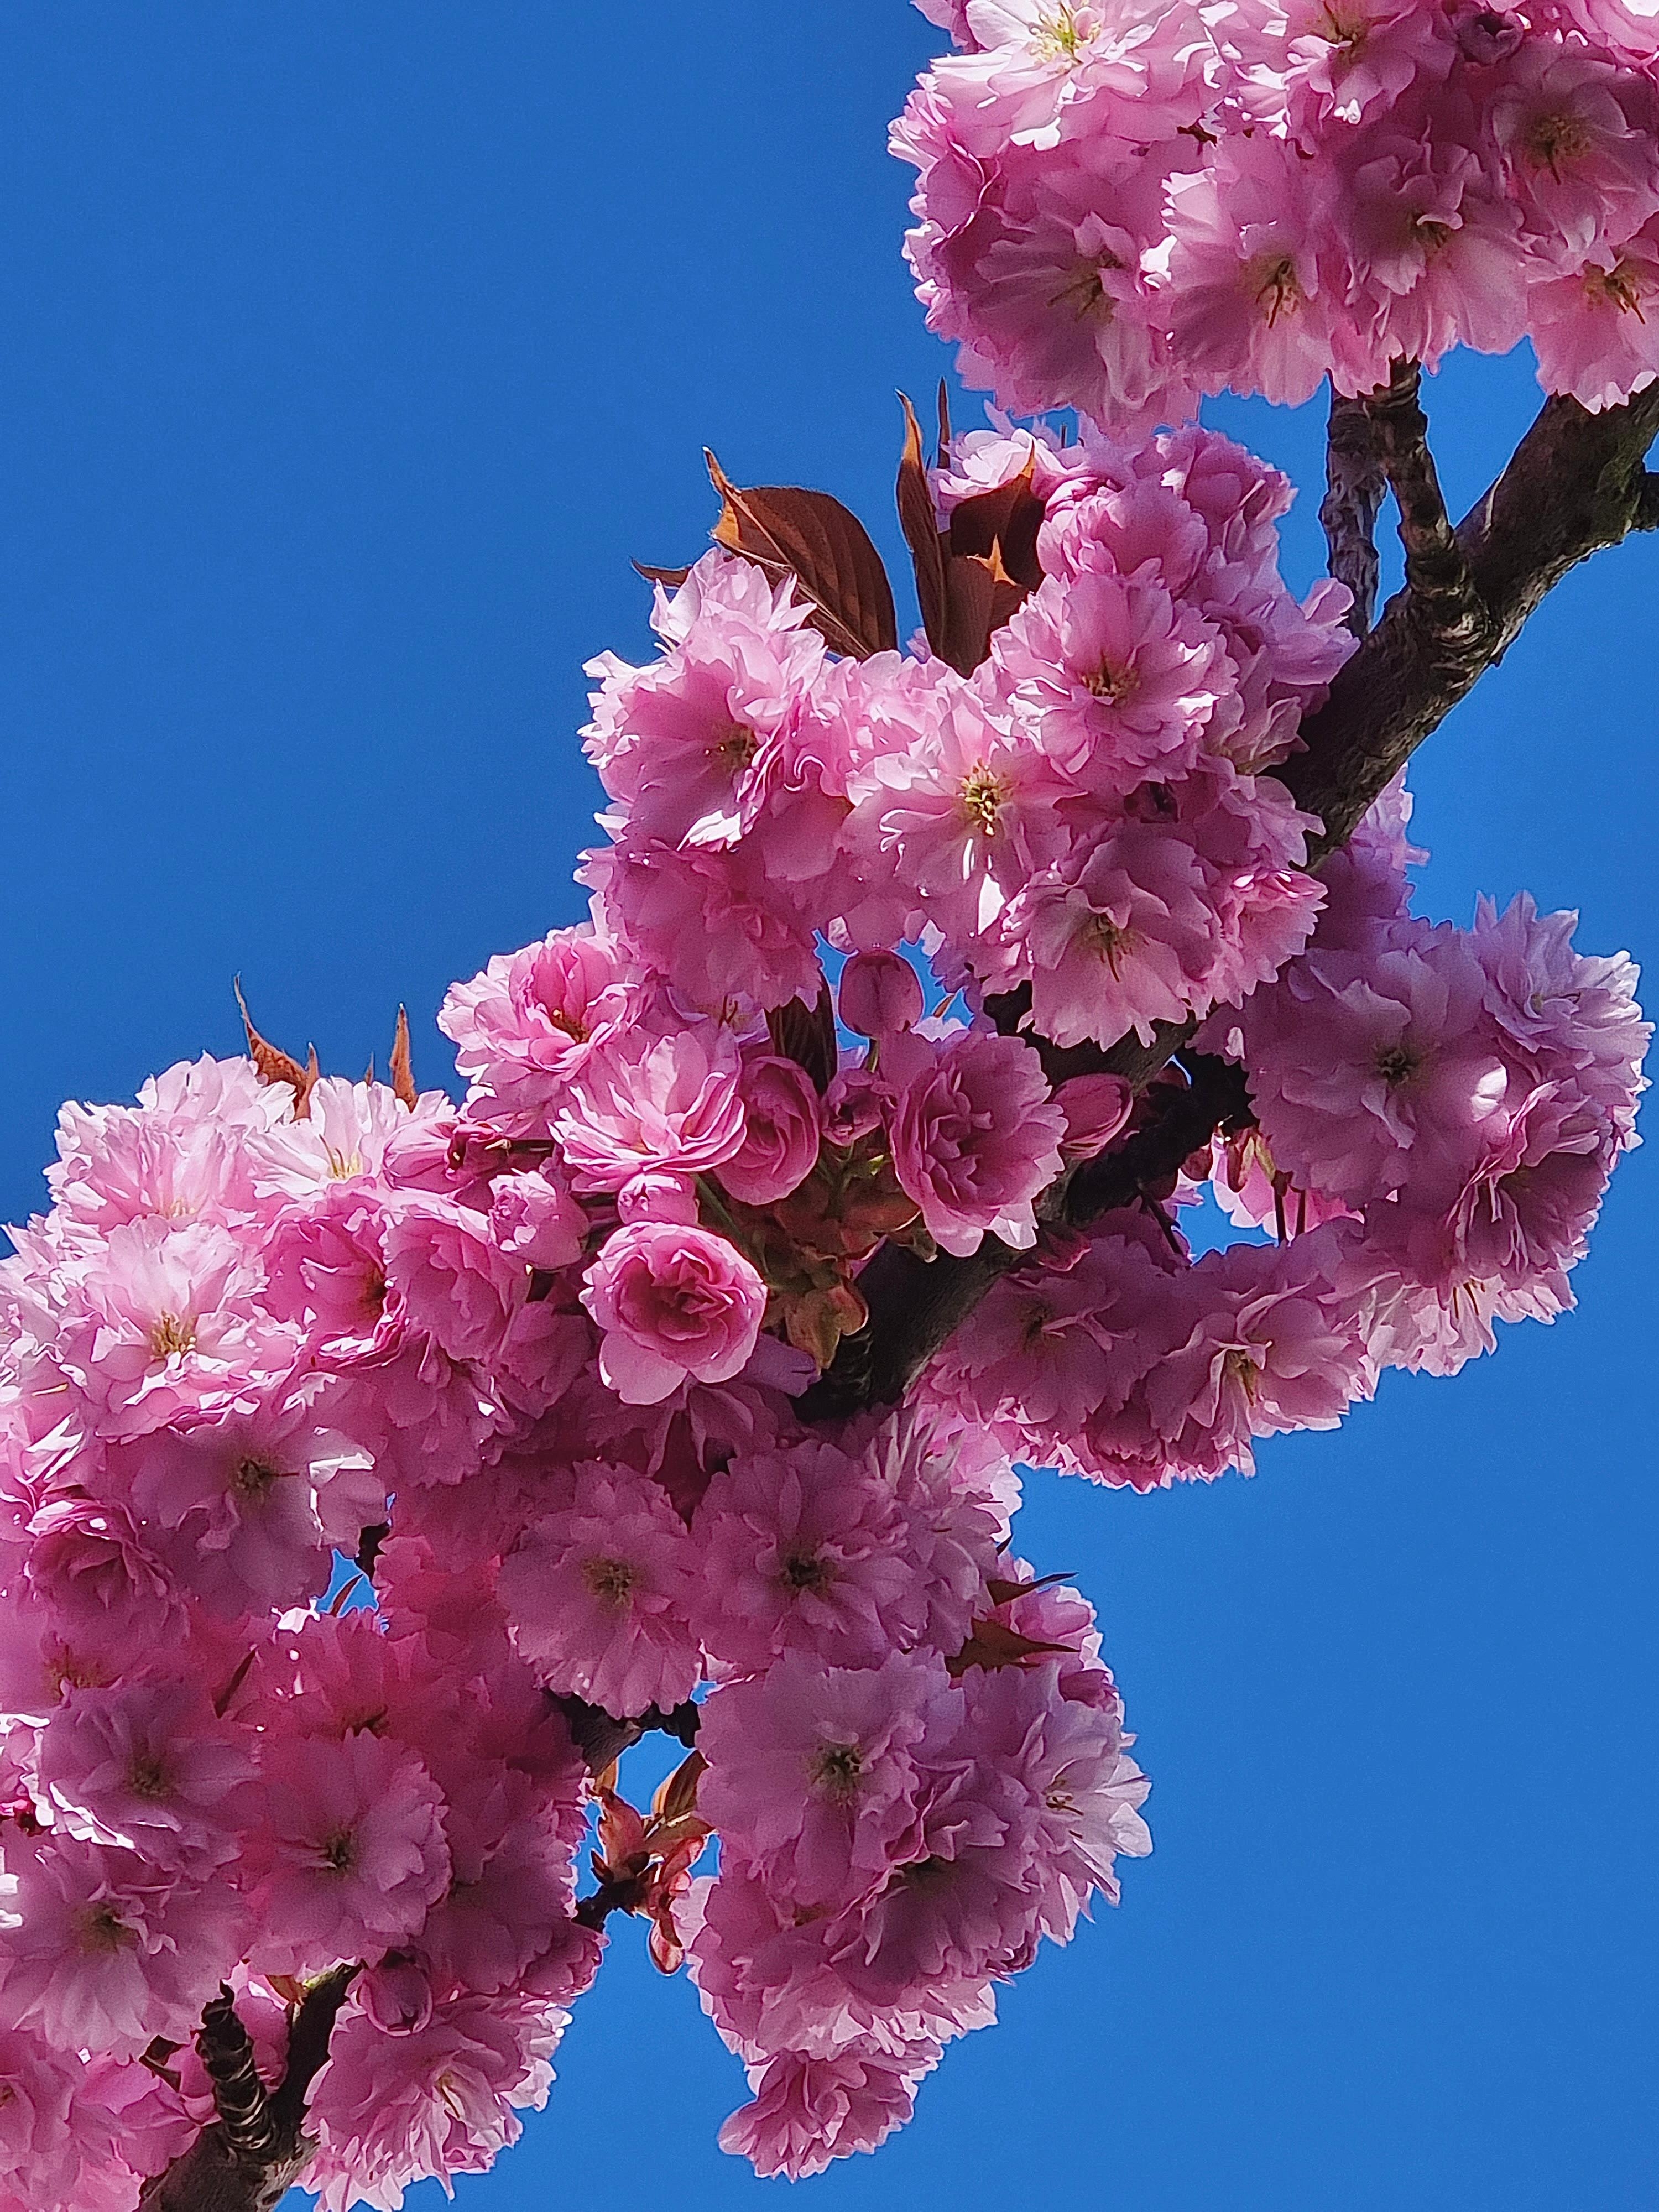 #Blütenpracht 🩷 bei #Sonnenschein eingefangen.. #Natur #Frühling #Blumenliebe #Freshflowers #Outdoortones #Springtime #Fotoliebe #Couchliebt 